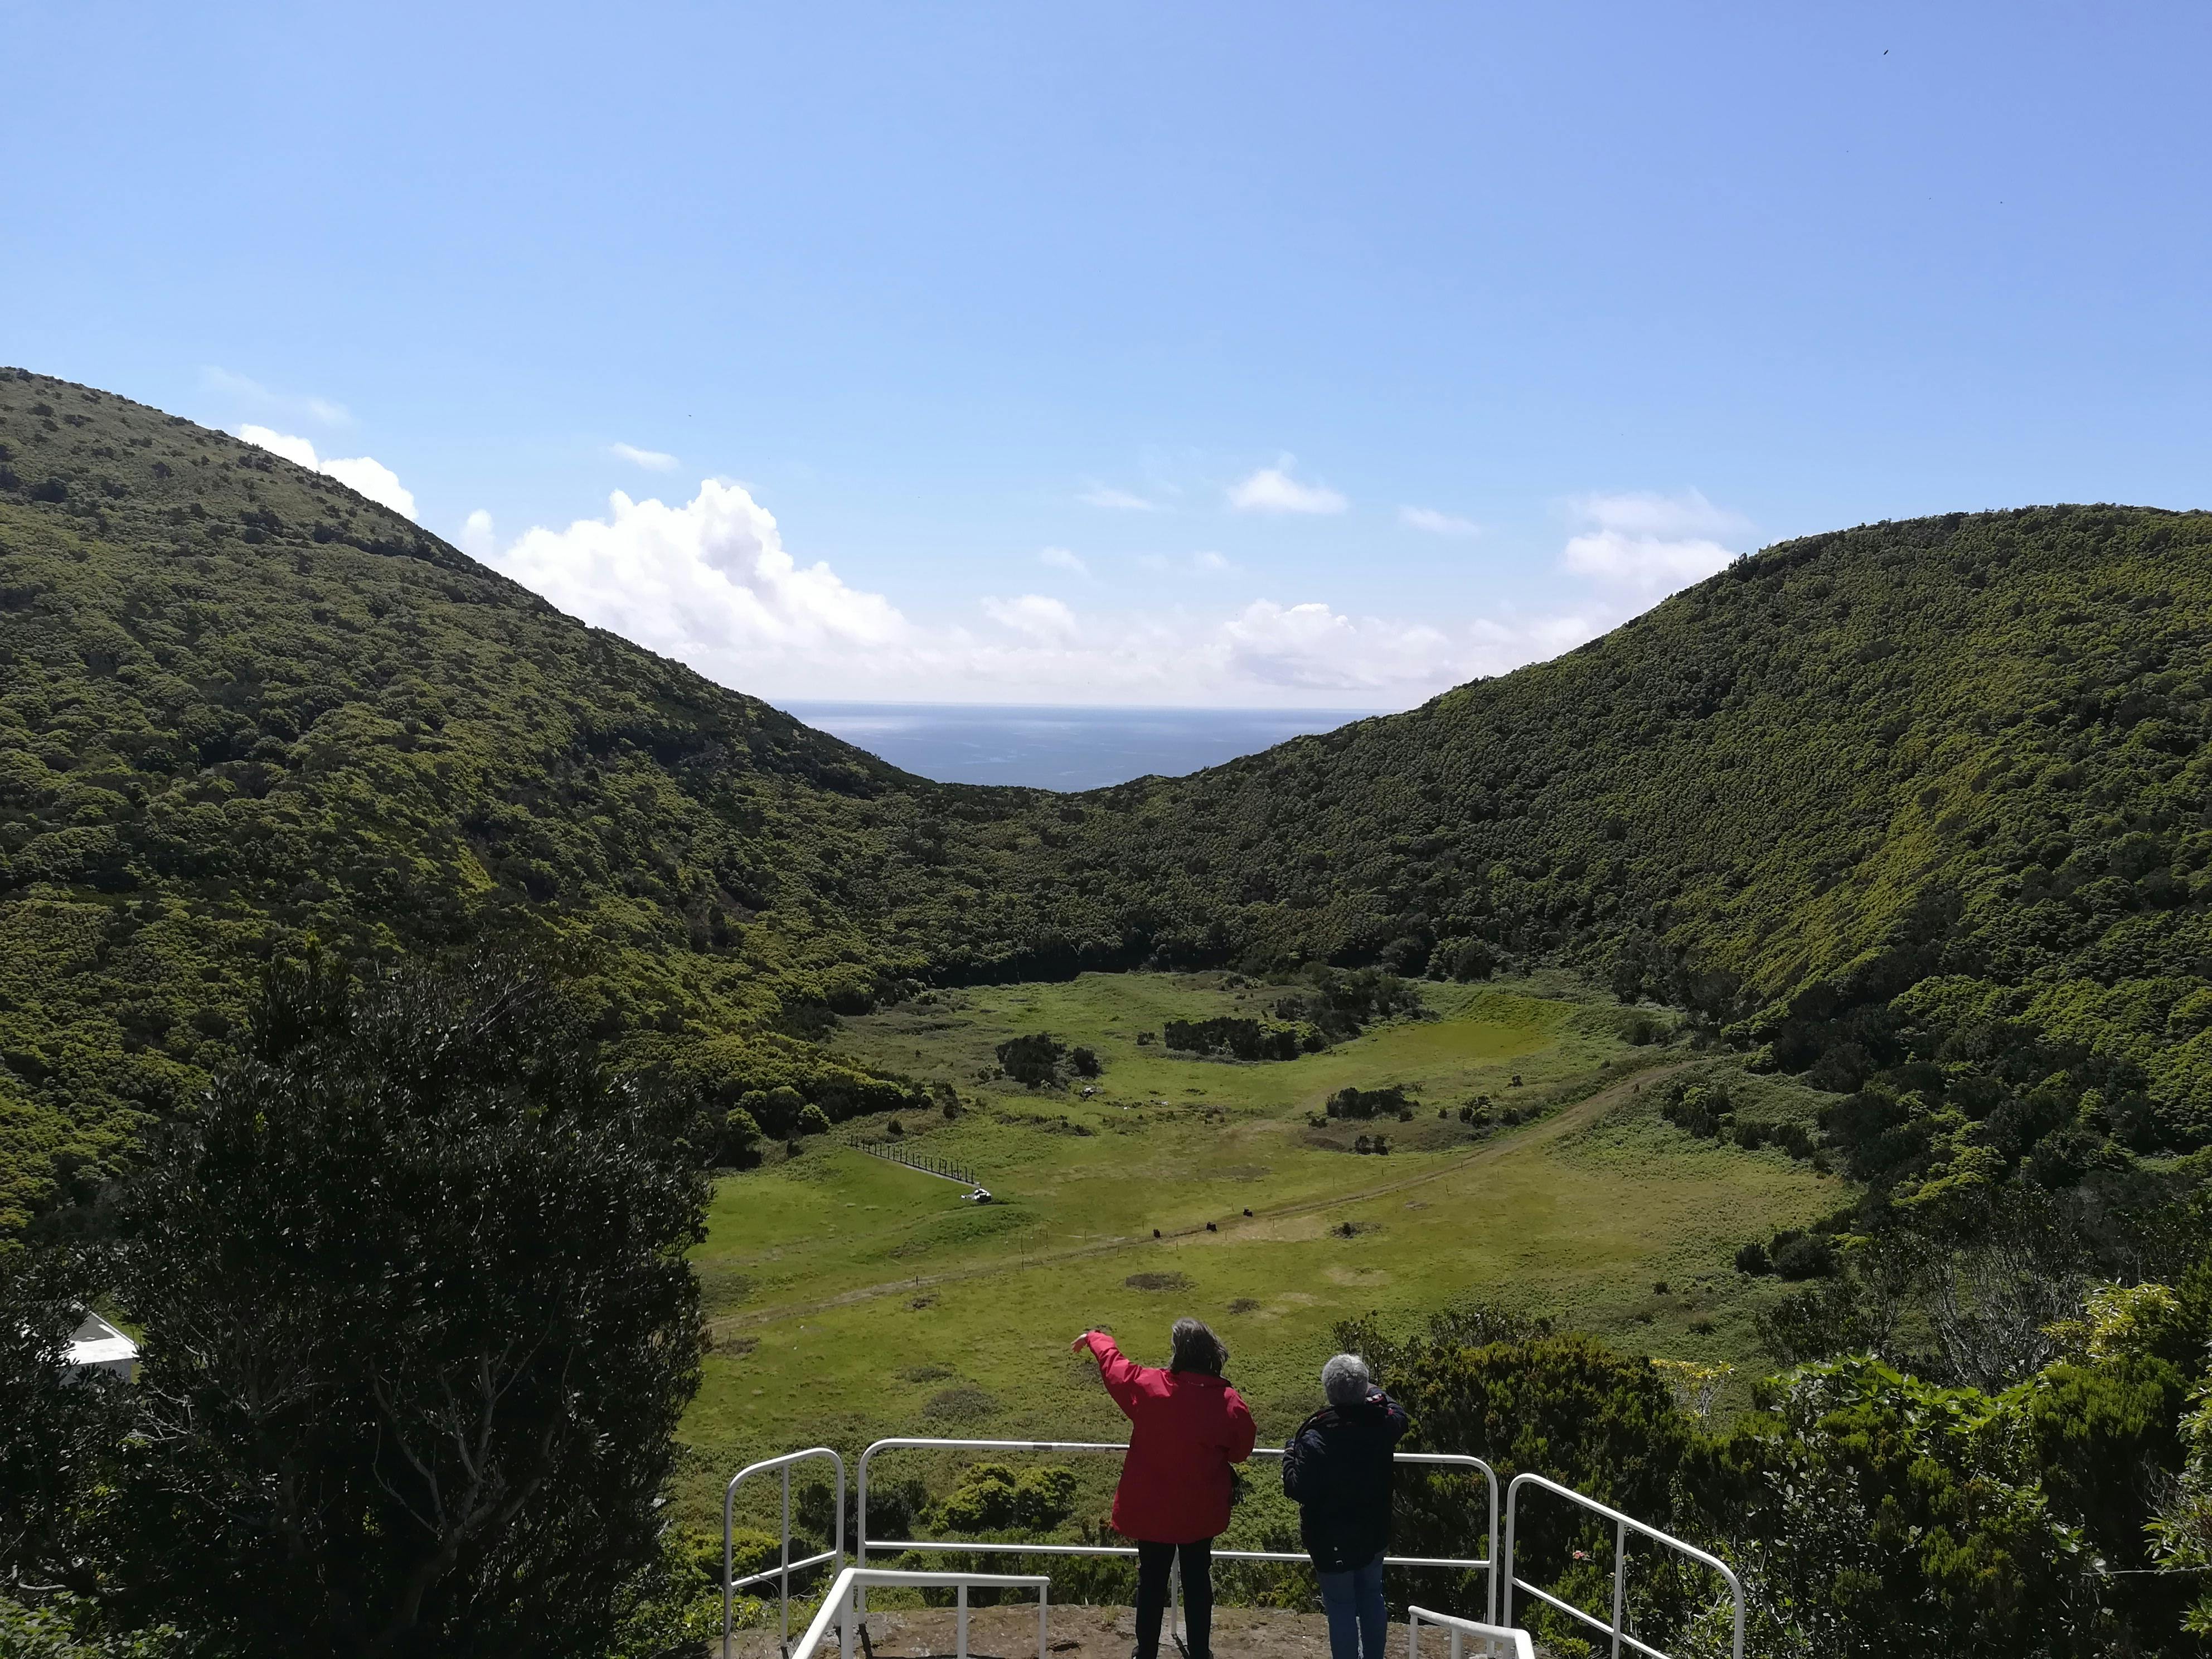 Terceira Island bustour van een halve dag